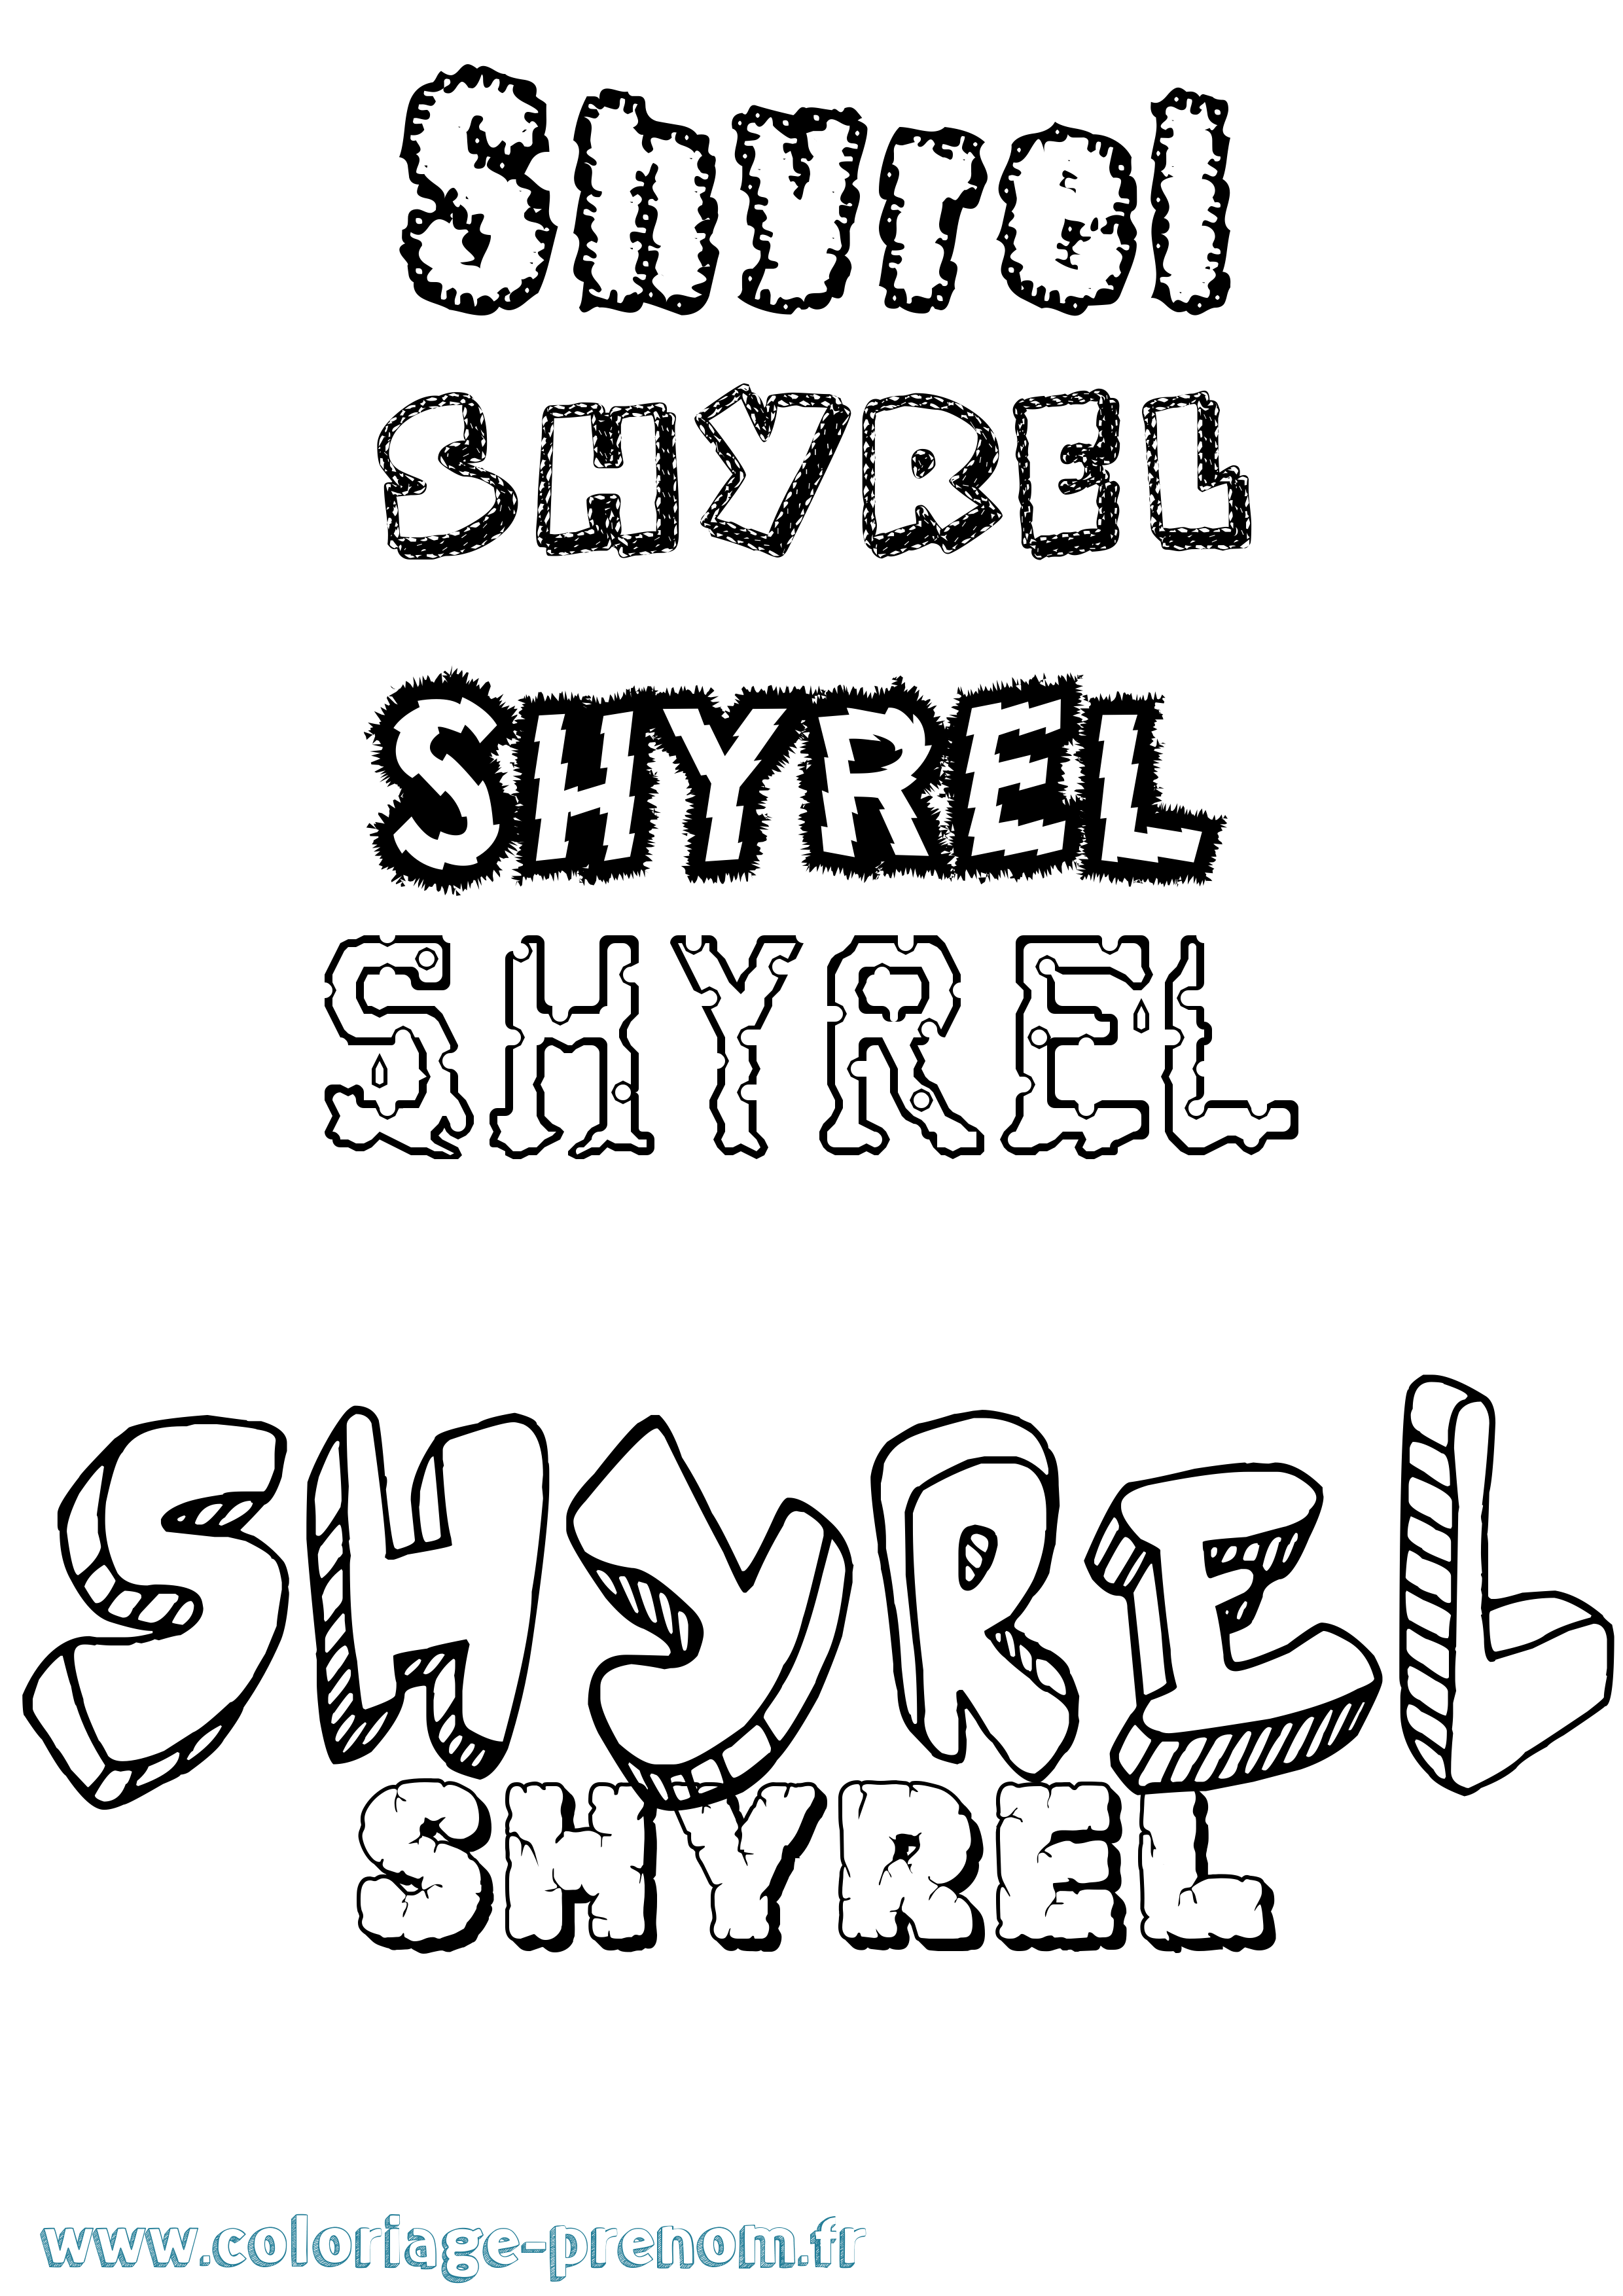 Coloriage prénom Shyrel